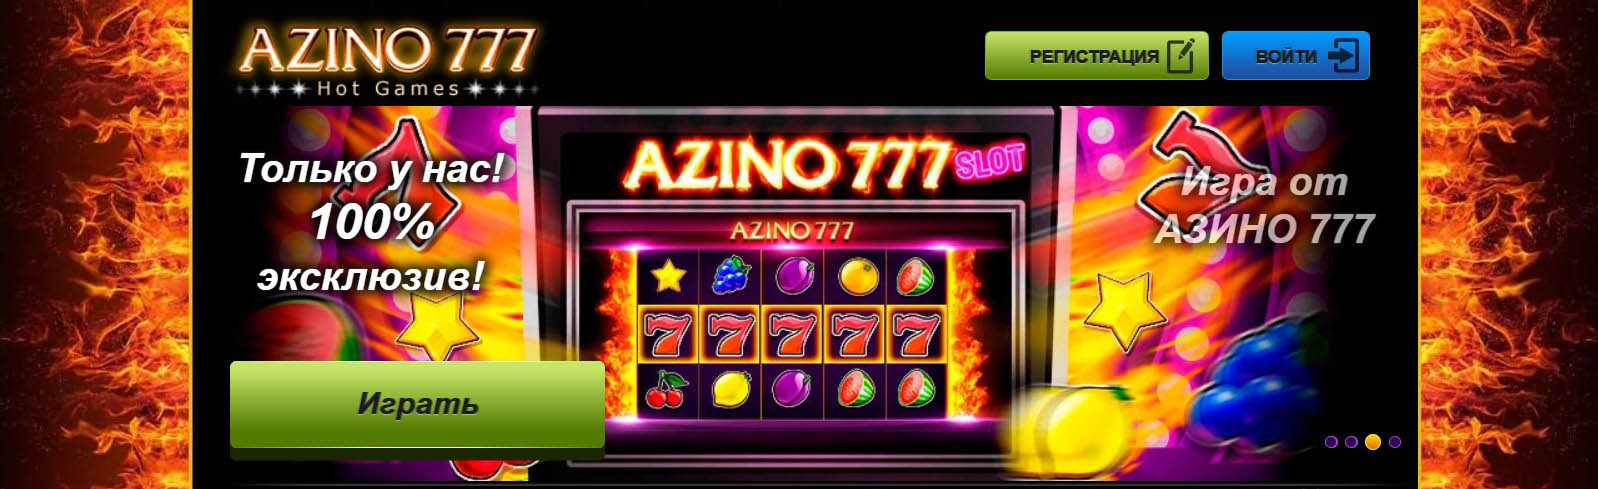 Azino777 вид главной страницы проекта